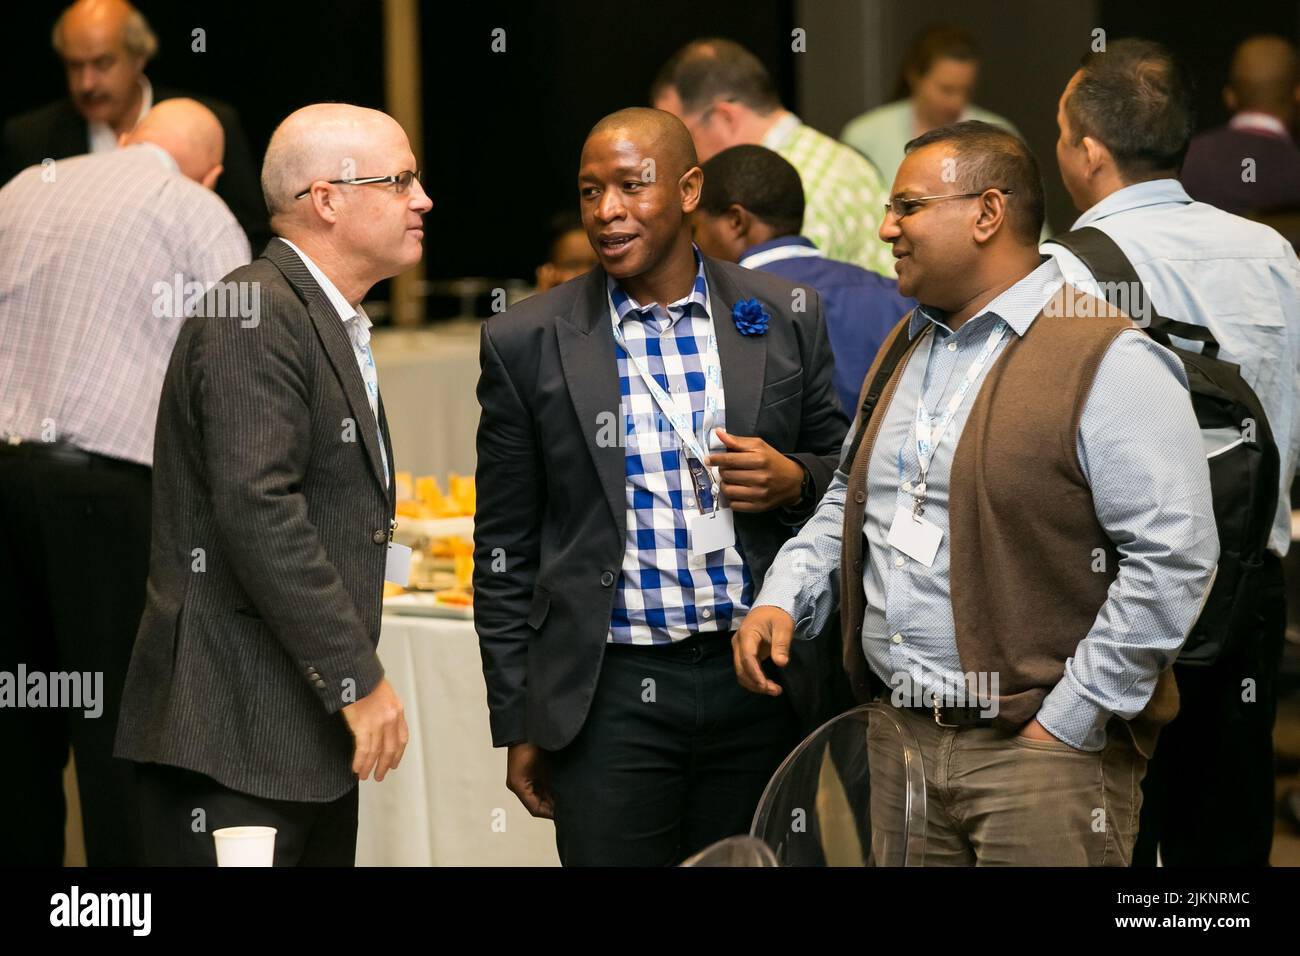 Johannesburg, Afrique du Sud - 31 mars 2015: Les délégués se sont réunis en réseau lors d'une conférence d'affaires Banque D'Images